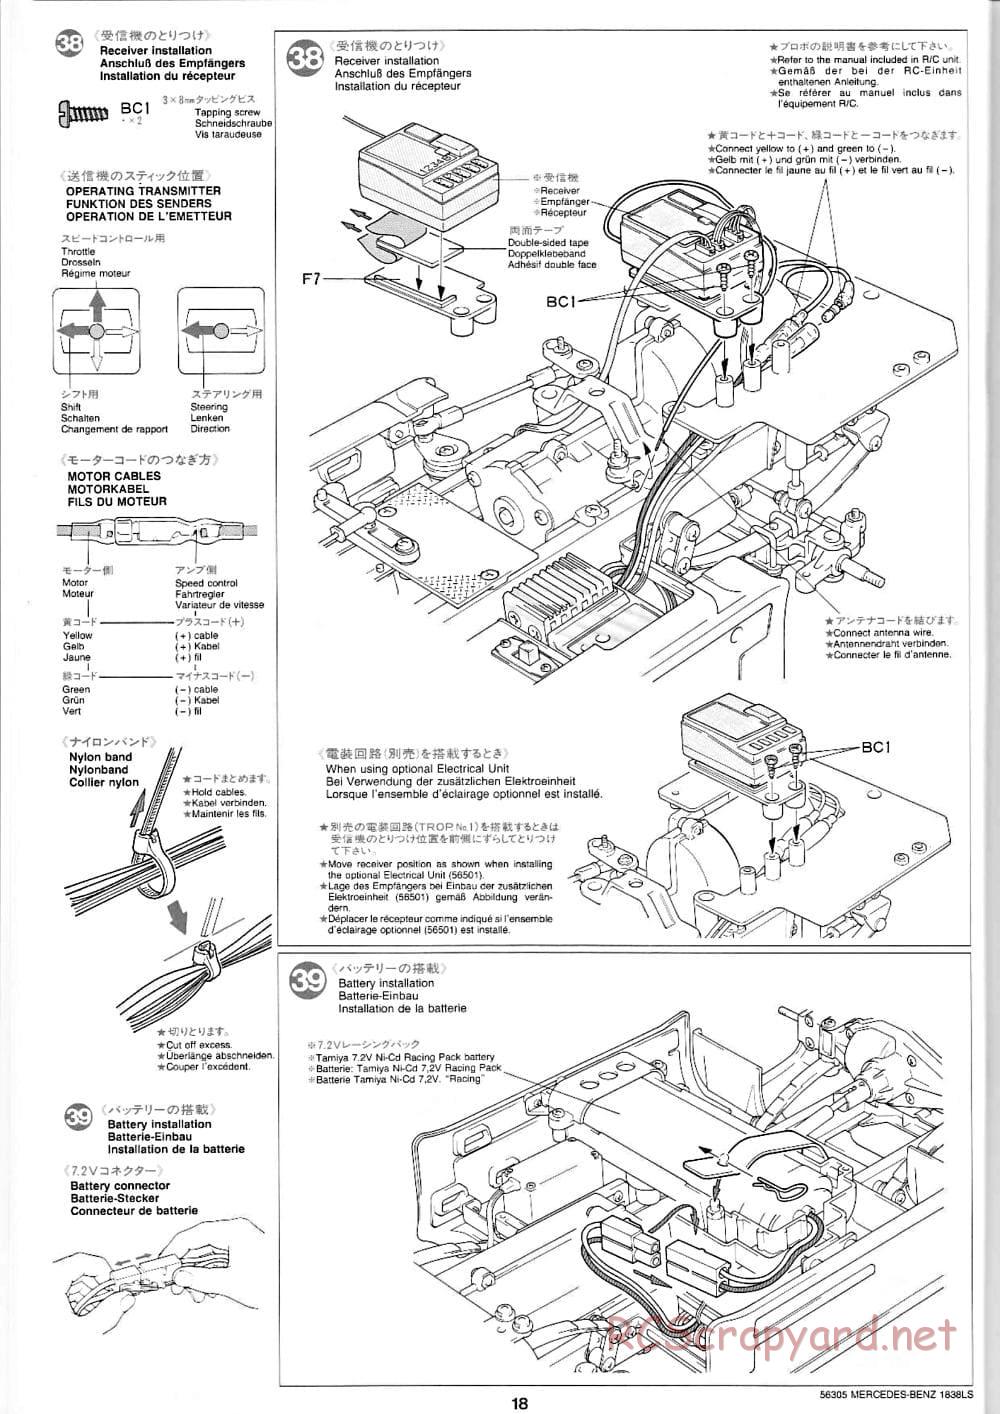 Tamiya - Mercedes-Benz 1838LS - Manual - Page 18